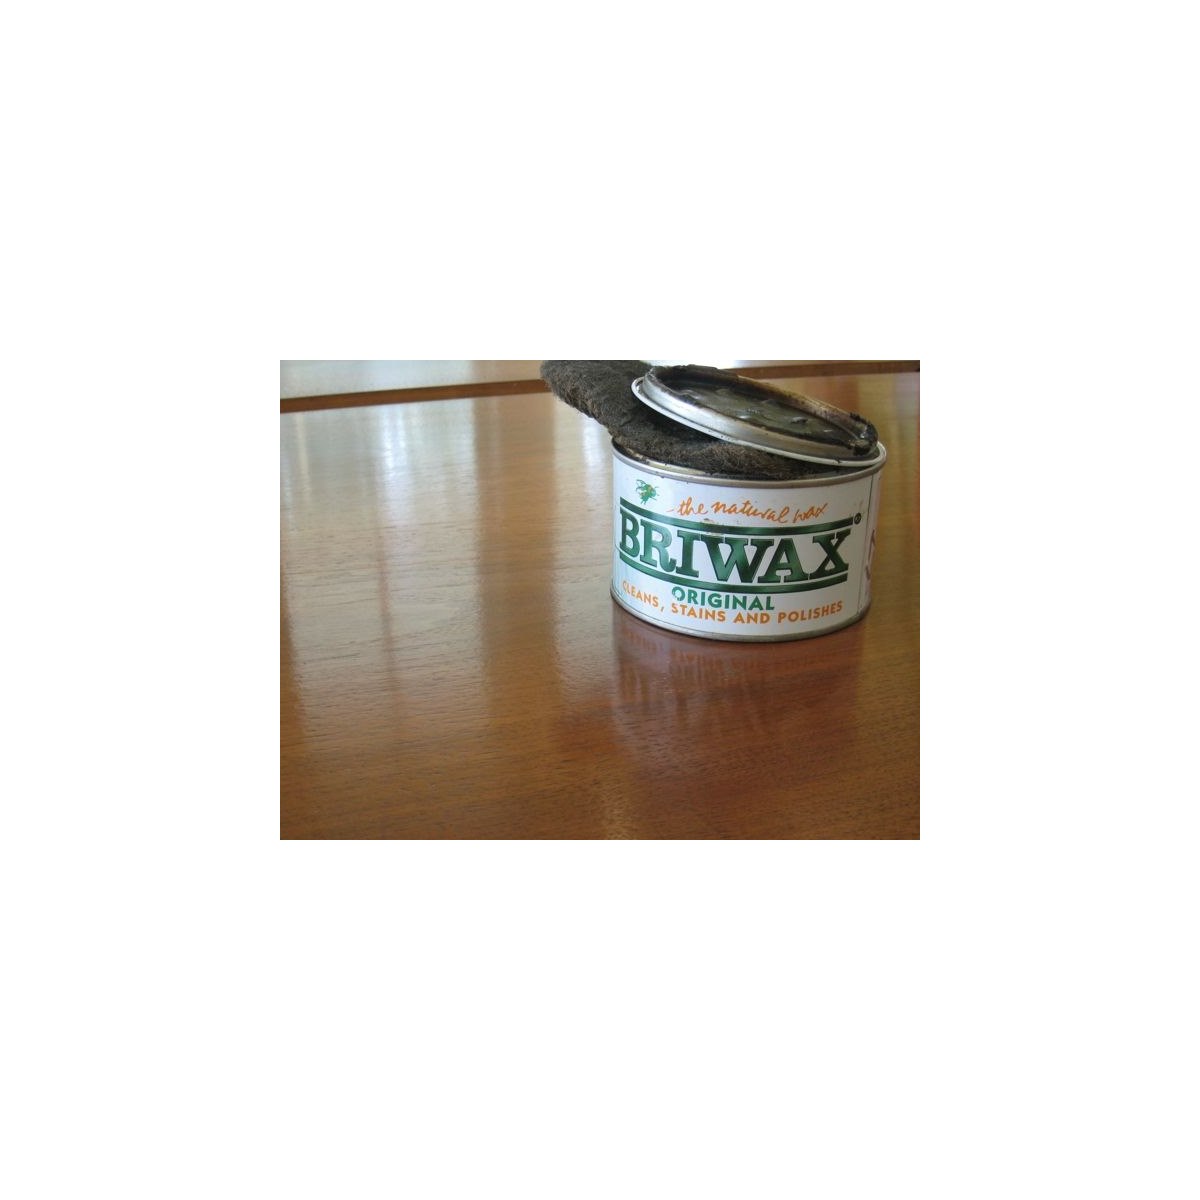 Briwax furniture wax